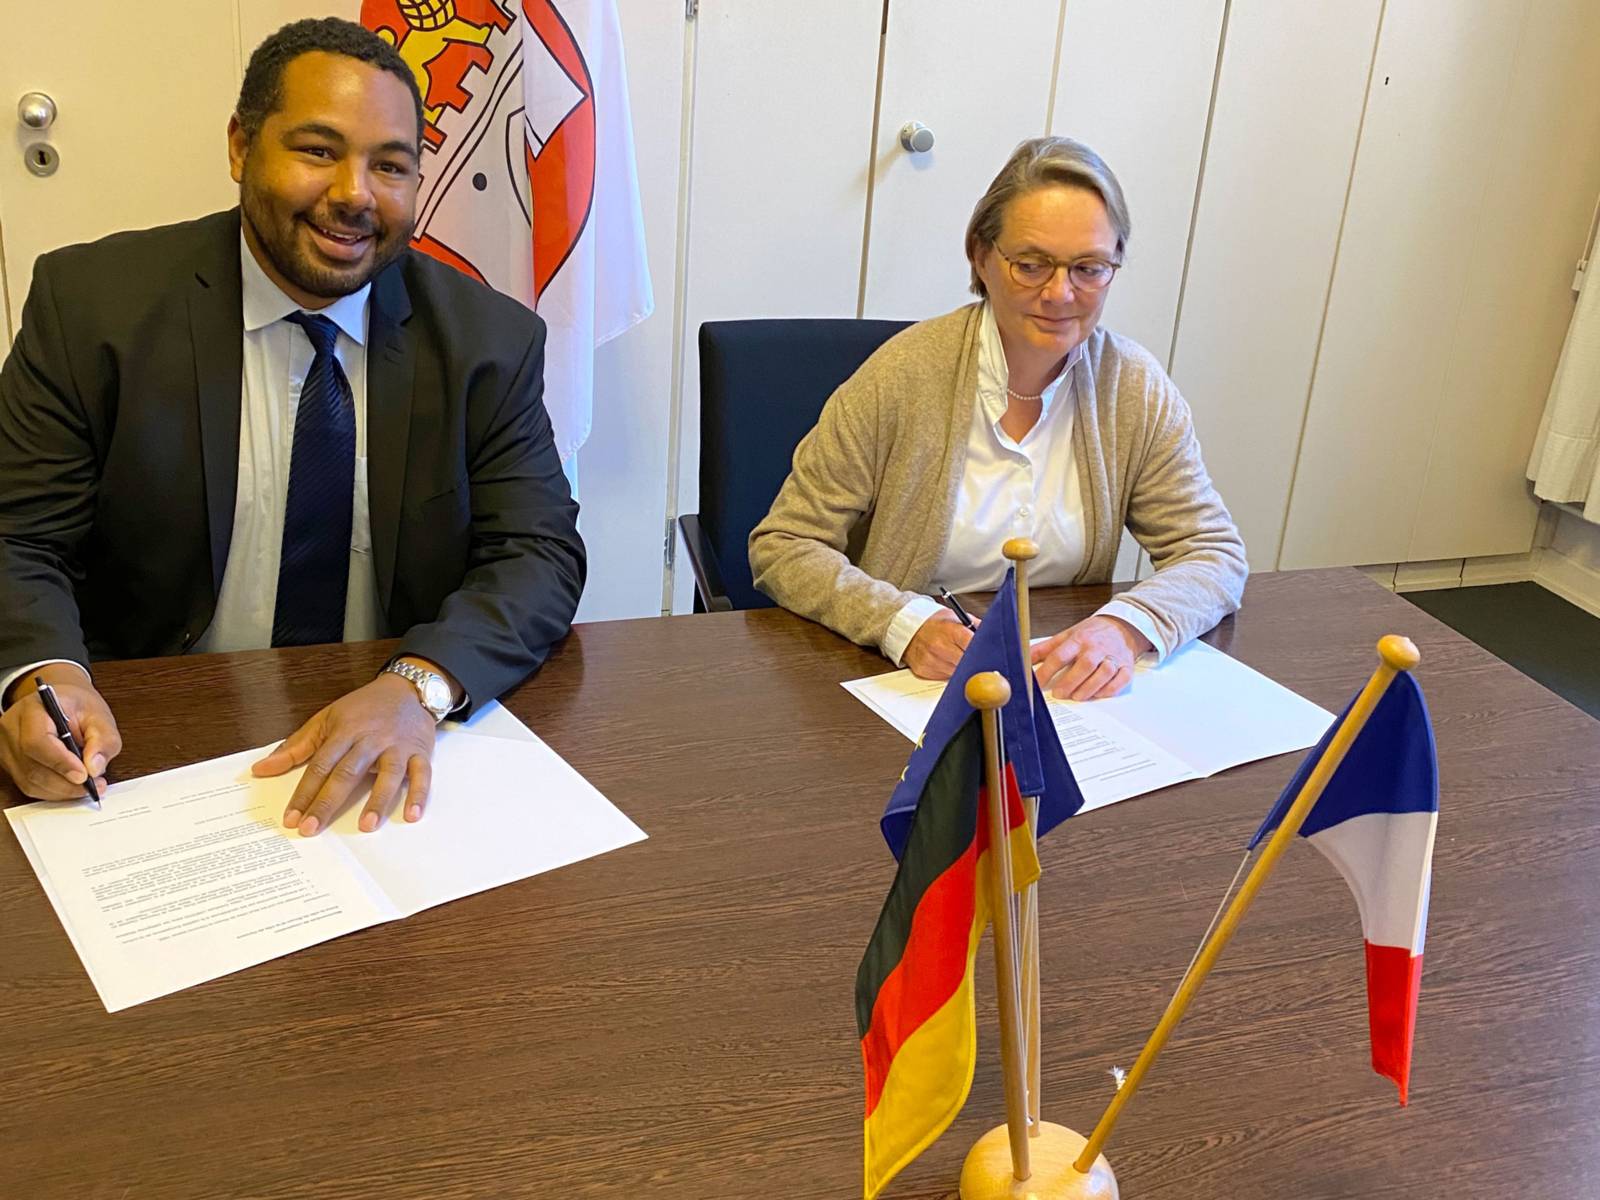 Kulturdezernentin Konstanze Beckedorf und Sileymane Sow, stellv. Bürgermeister Stadt Rouen, unterzeichnen das Memorandum über die Zusammenarbeit zwischen der Stadt Rouen und der Landeshauptstadt Hannover.